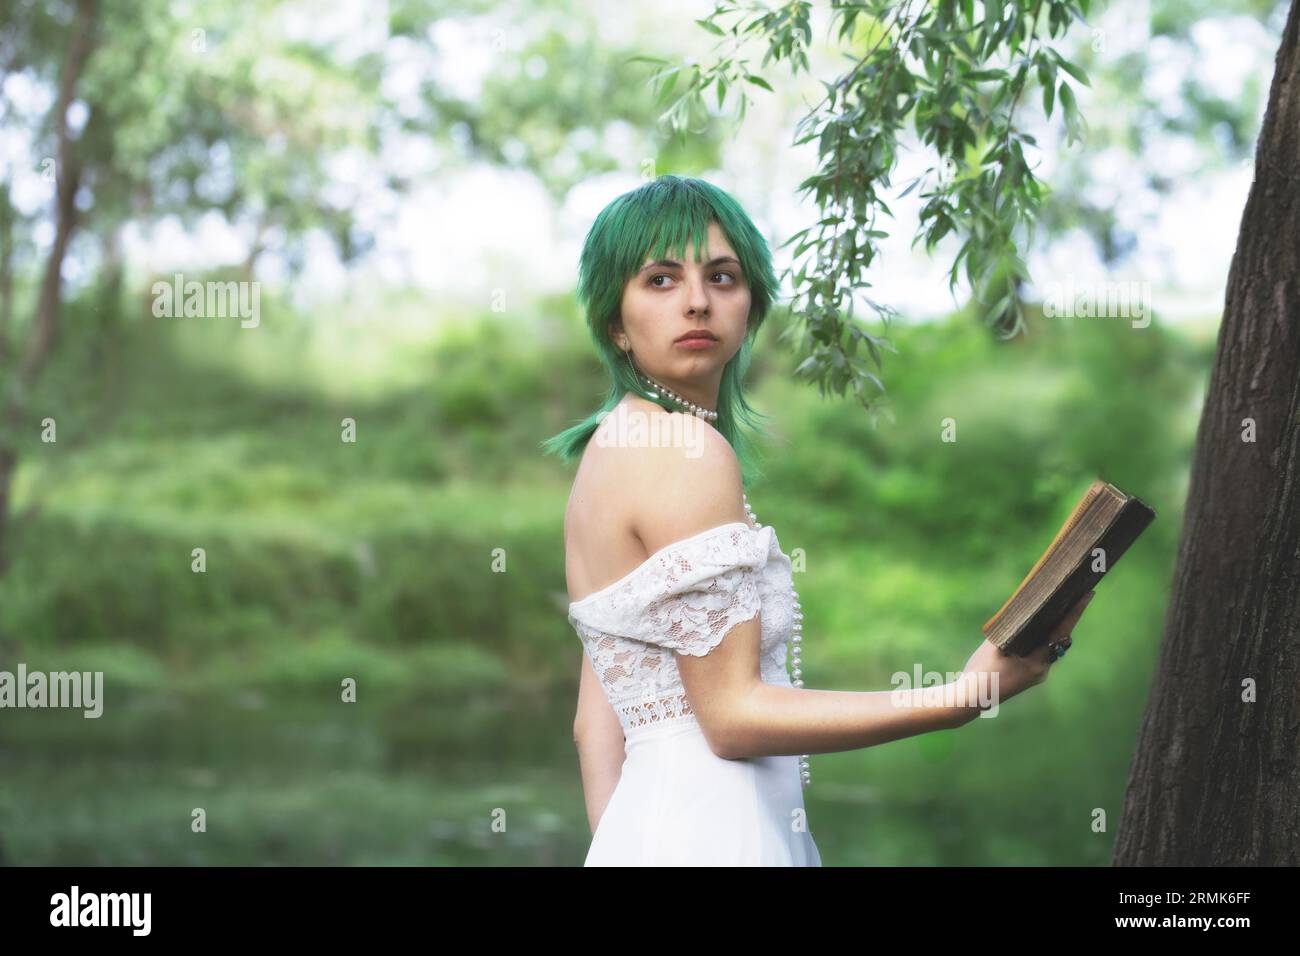 elegante ragazza dai capelli verdi che legge un libro nella quiete di un parco verde donne in un'atmosfera verde e surreale Foto Stock